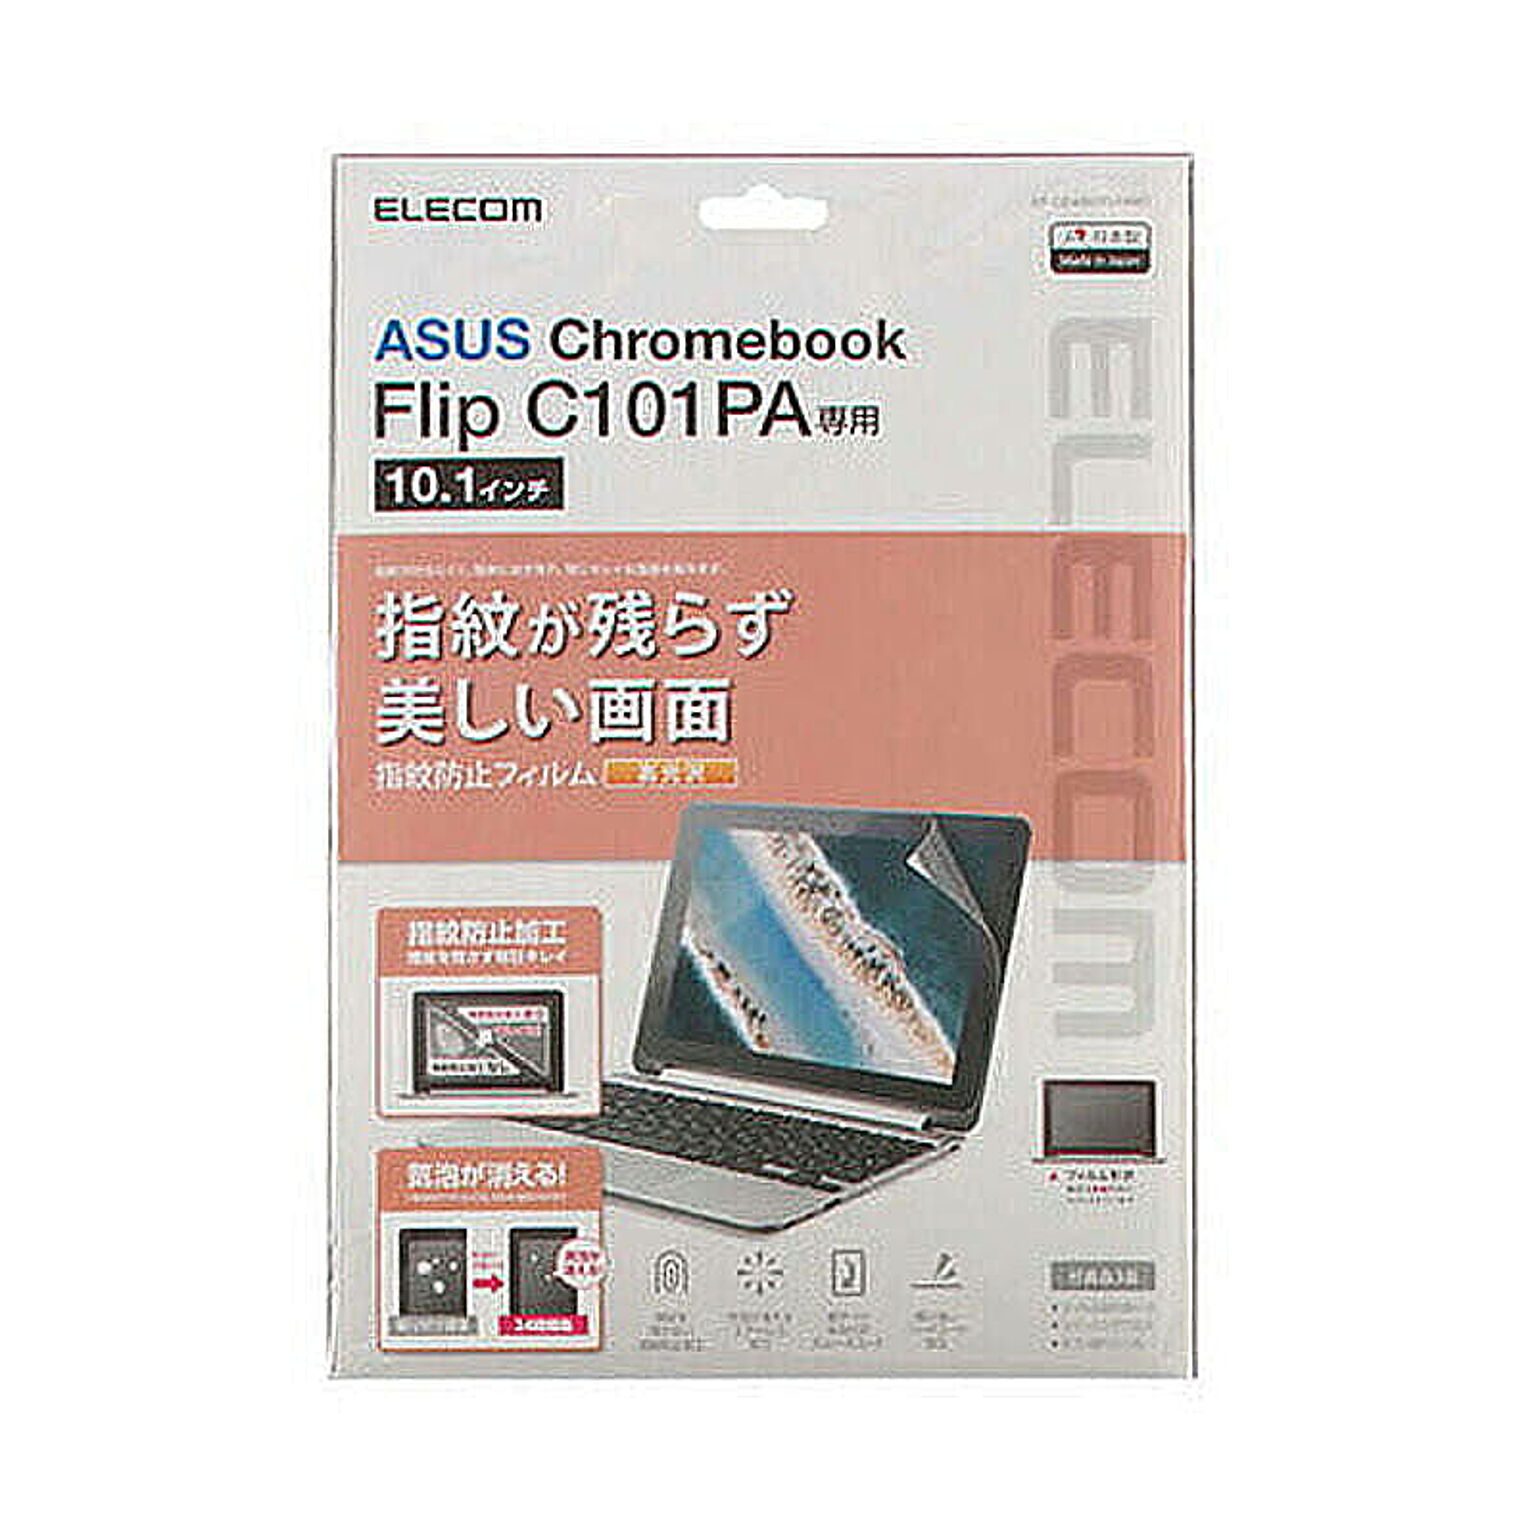 エレコム ASUS Chromebook Flip C101PA用/液晶保護フィルム/光沢 EF-CBAS01FLFANG 管理No. 4549550171519